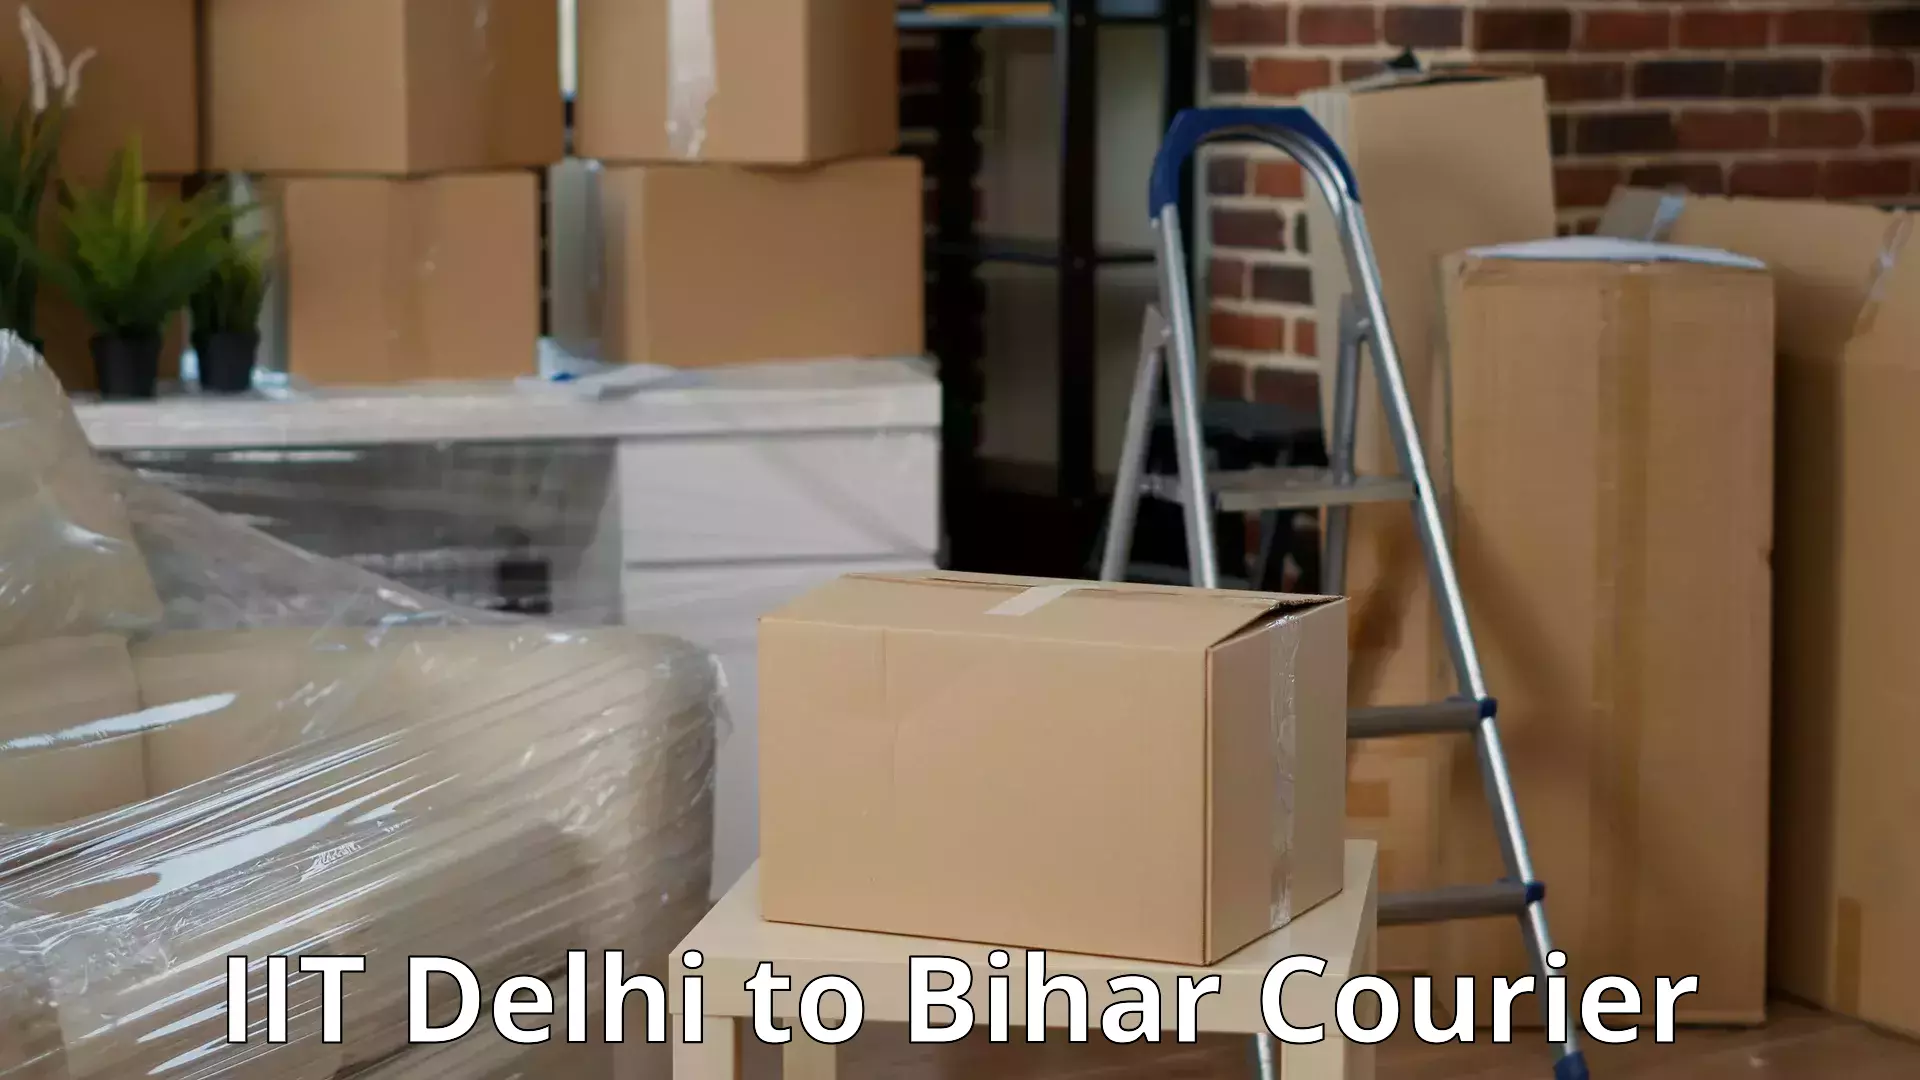 Expert relocation solutions IIT Delhi to Bihar